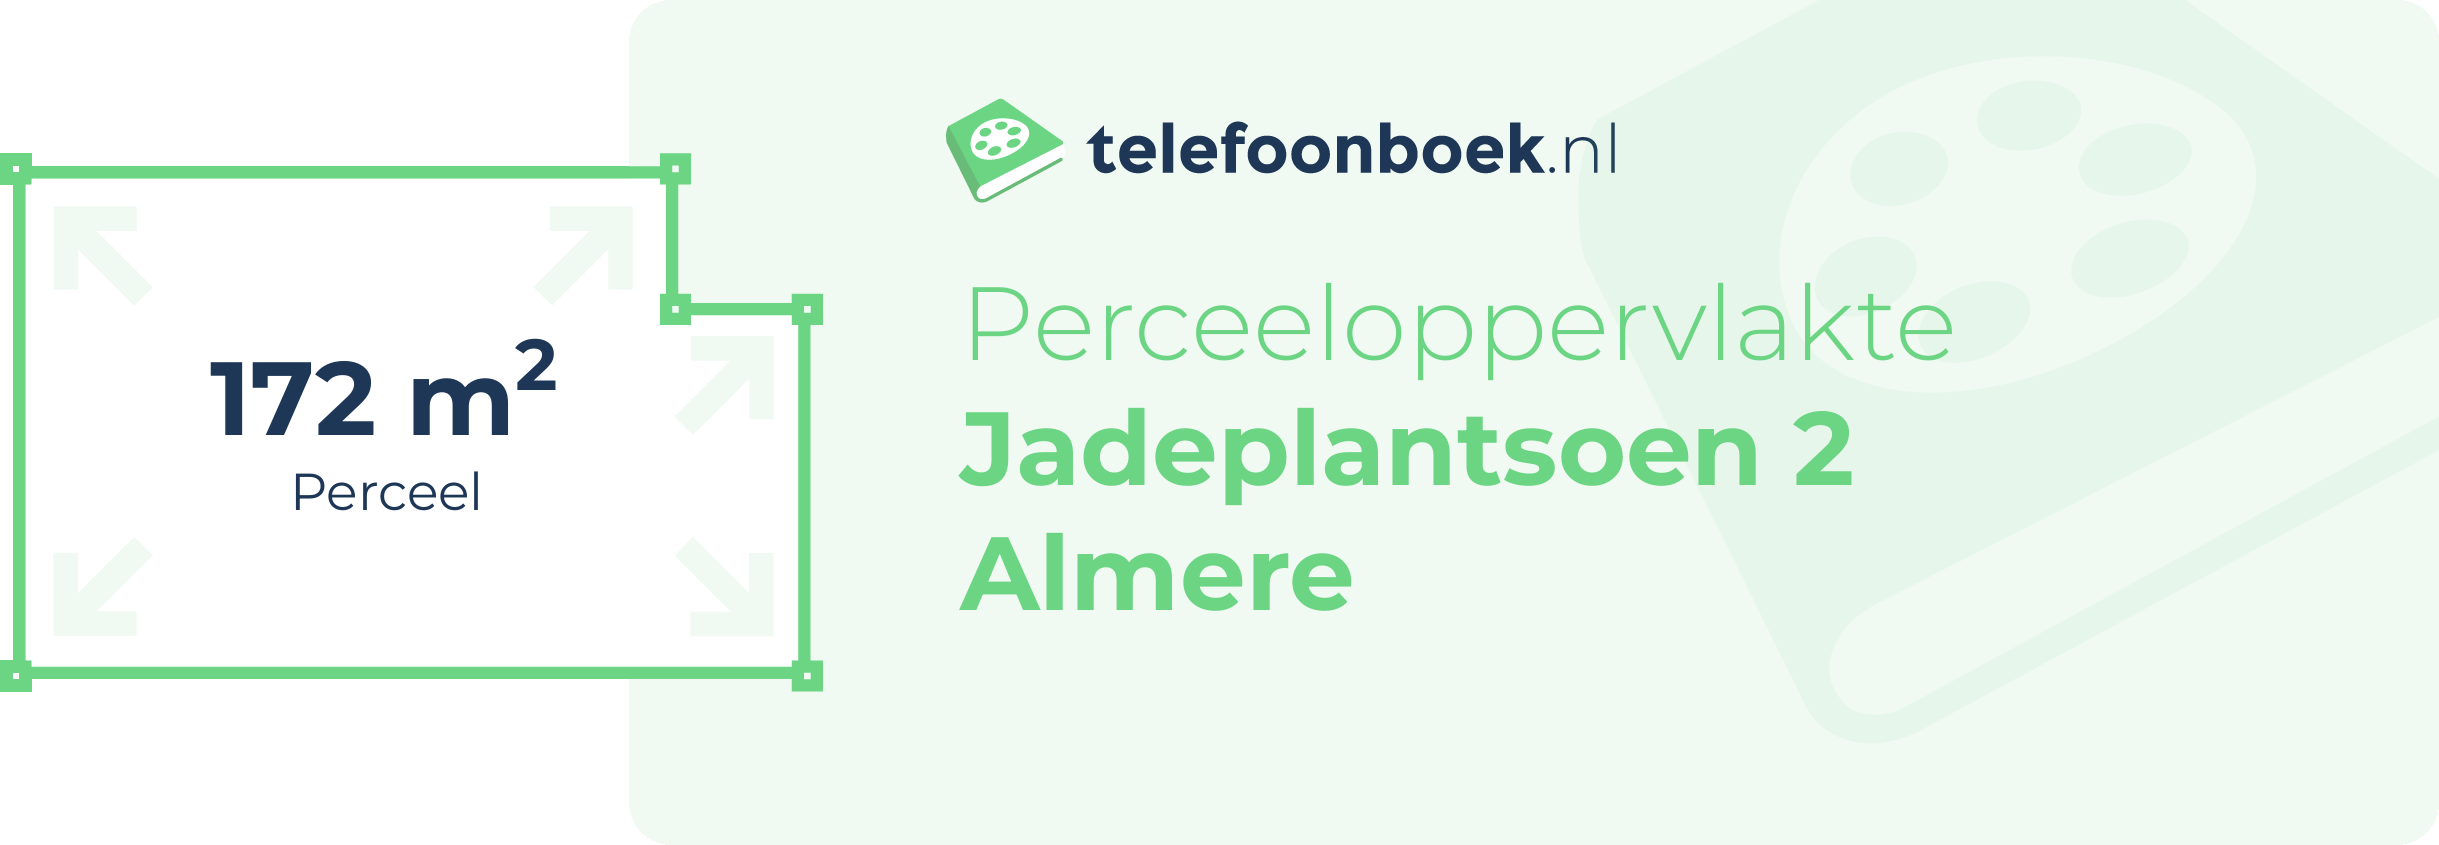 Perceeloppervlakte Jadeplantsoen 2 Almere